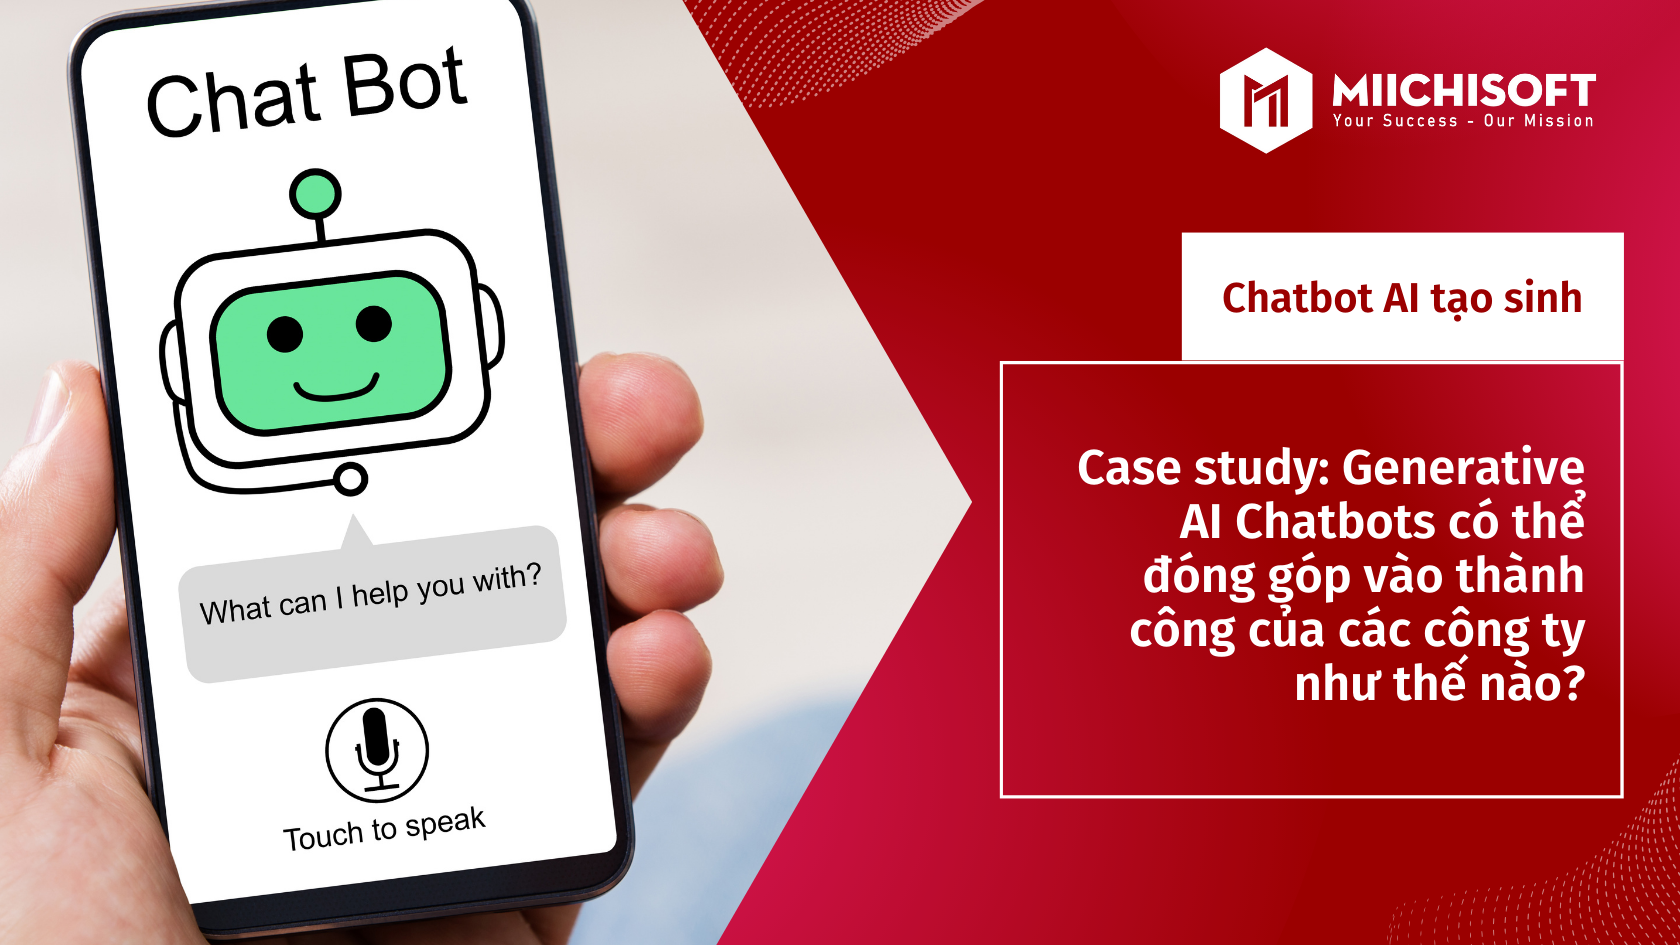 Case study: Chatbot AI tạo sinh có thể đóng góp vào thành công của các công ty như thế nào?